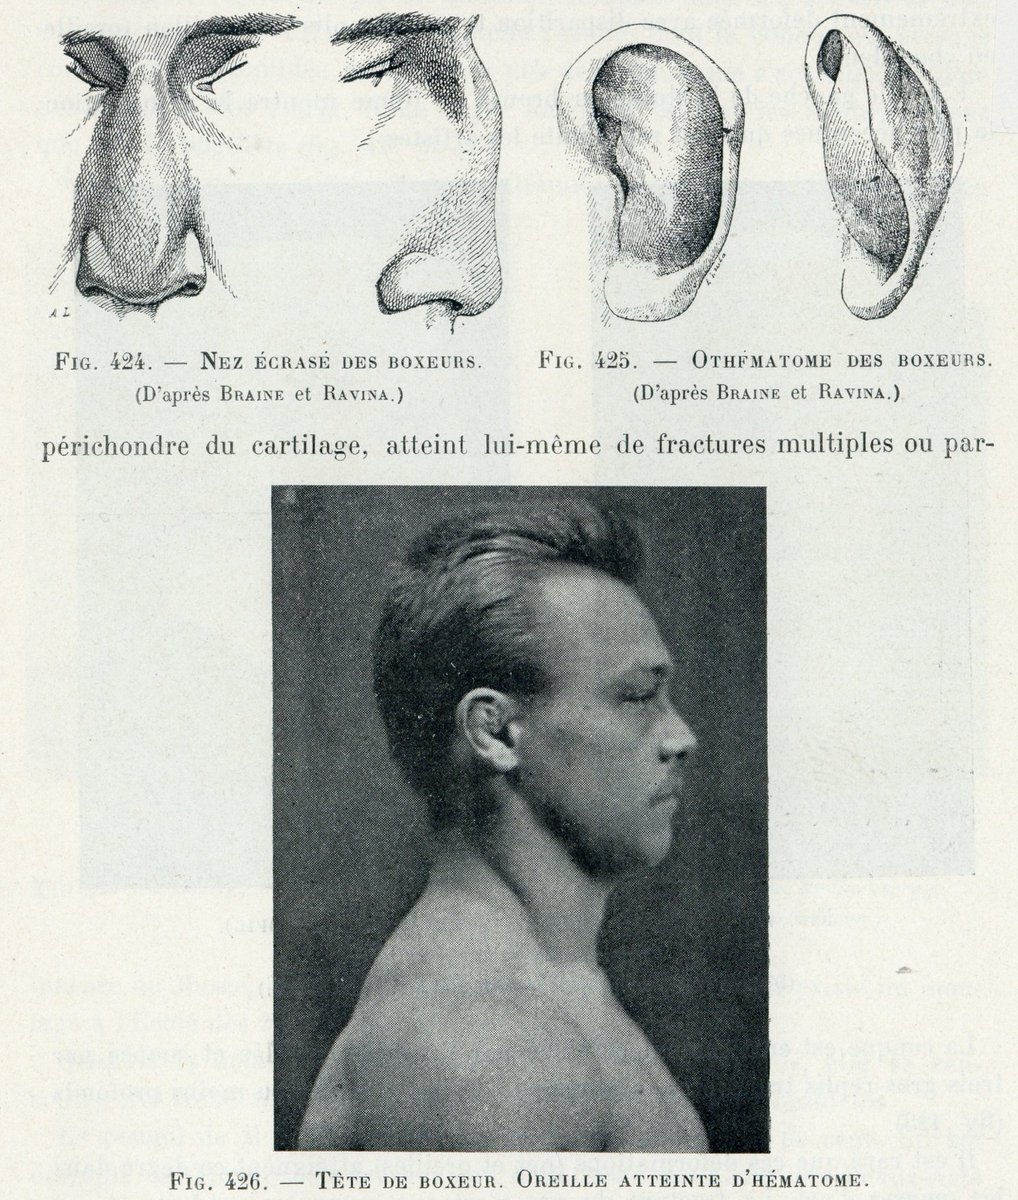 ボクサー鼻とボクサー耳の記述は、20世紀初頭の美術解剖学書にも掲載されている。美術表現としてはレアなケースだが、こうした詳細なところまで踏み込んだ研究に触れることが面白くて仕方がない。 